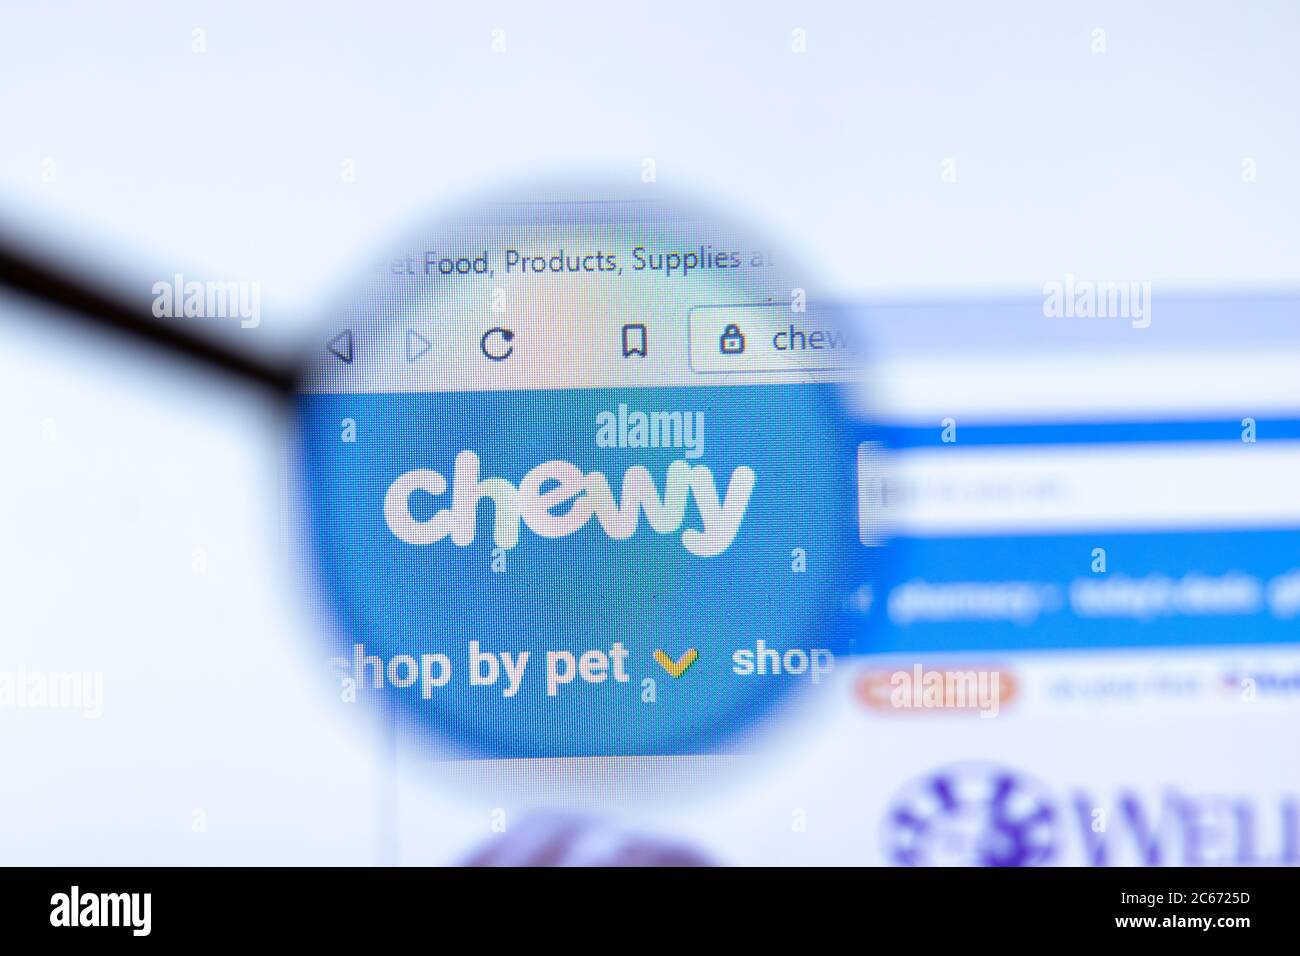 Mosca, Russia - 1 giugno 2020: Pagina del sito di Chewy Inc nel browser. Primo piano del logo, editoriale illustrativo Foto Stock